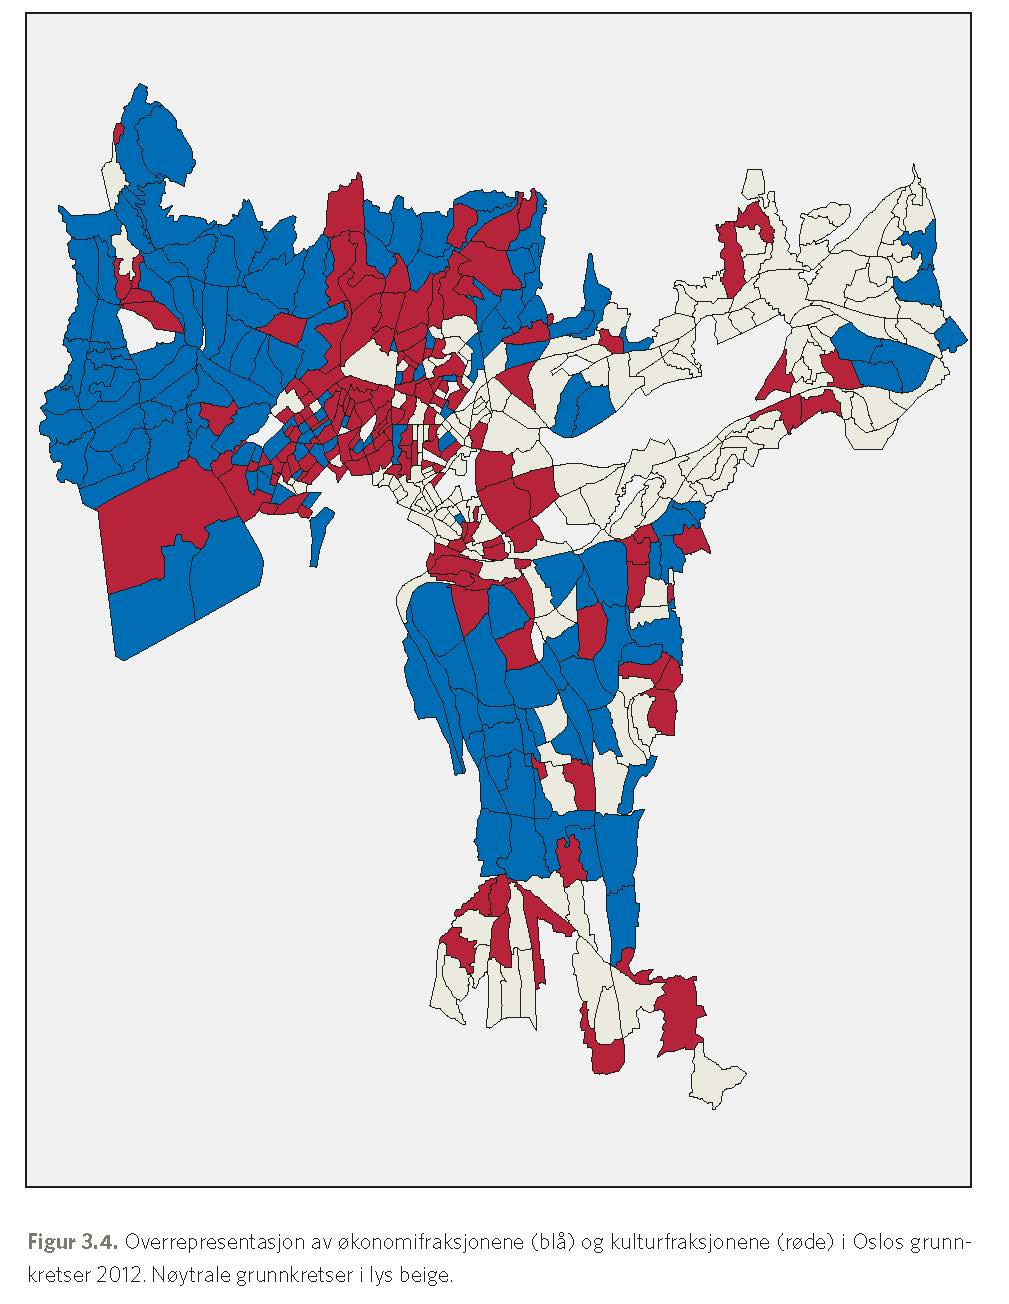 Loe's Alien-figur: Bildet viser et kart over overrepresentasjon av økonomifraksjonene (blå) og kulturfraksjonene (røde) i oslos grunnkretser 2012. Kilde: Oslo - ulikhetenes by.